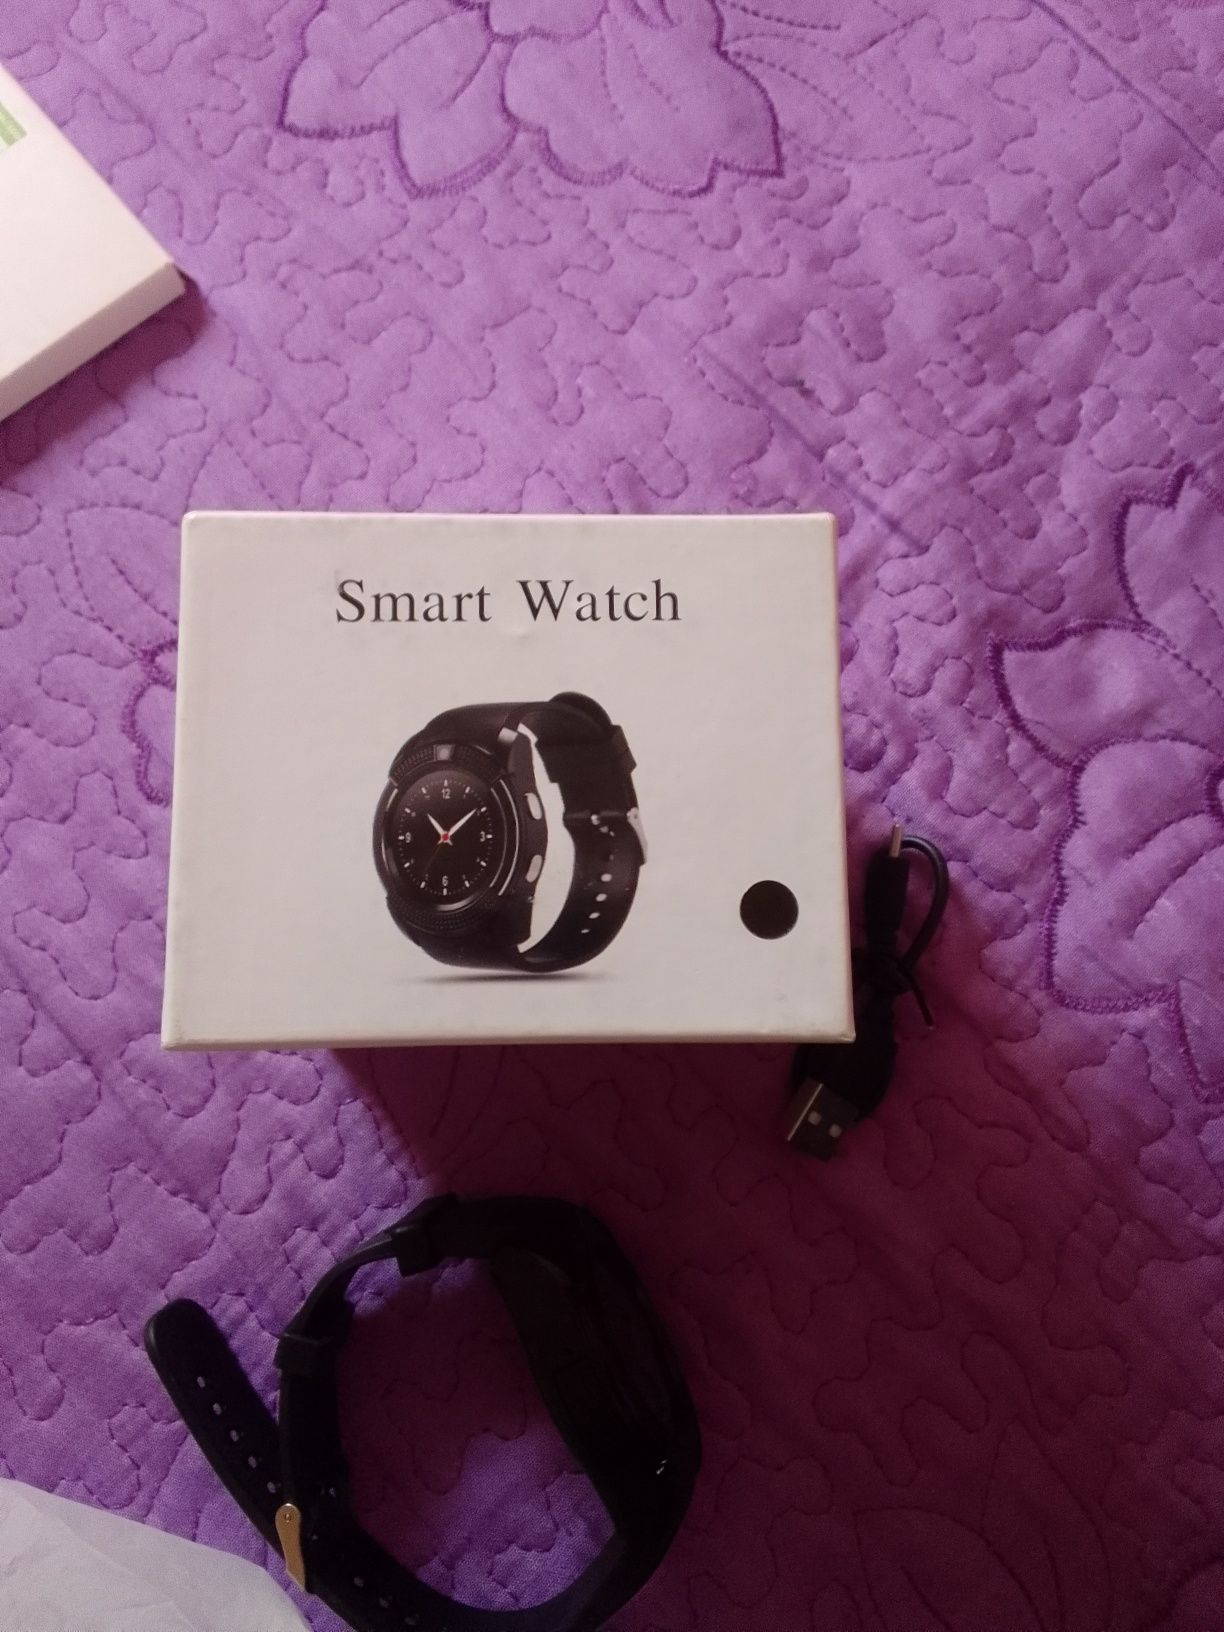 Smart watch user ghuide